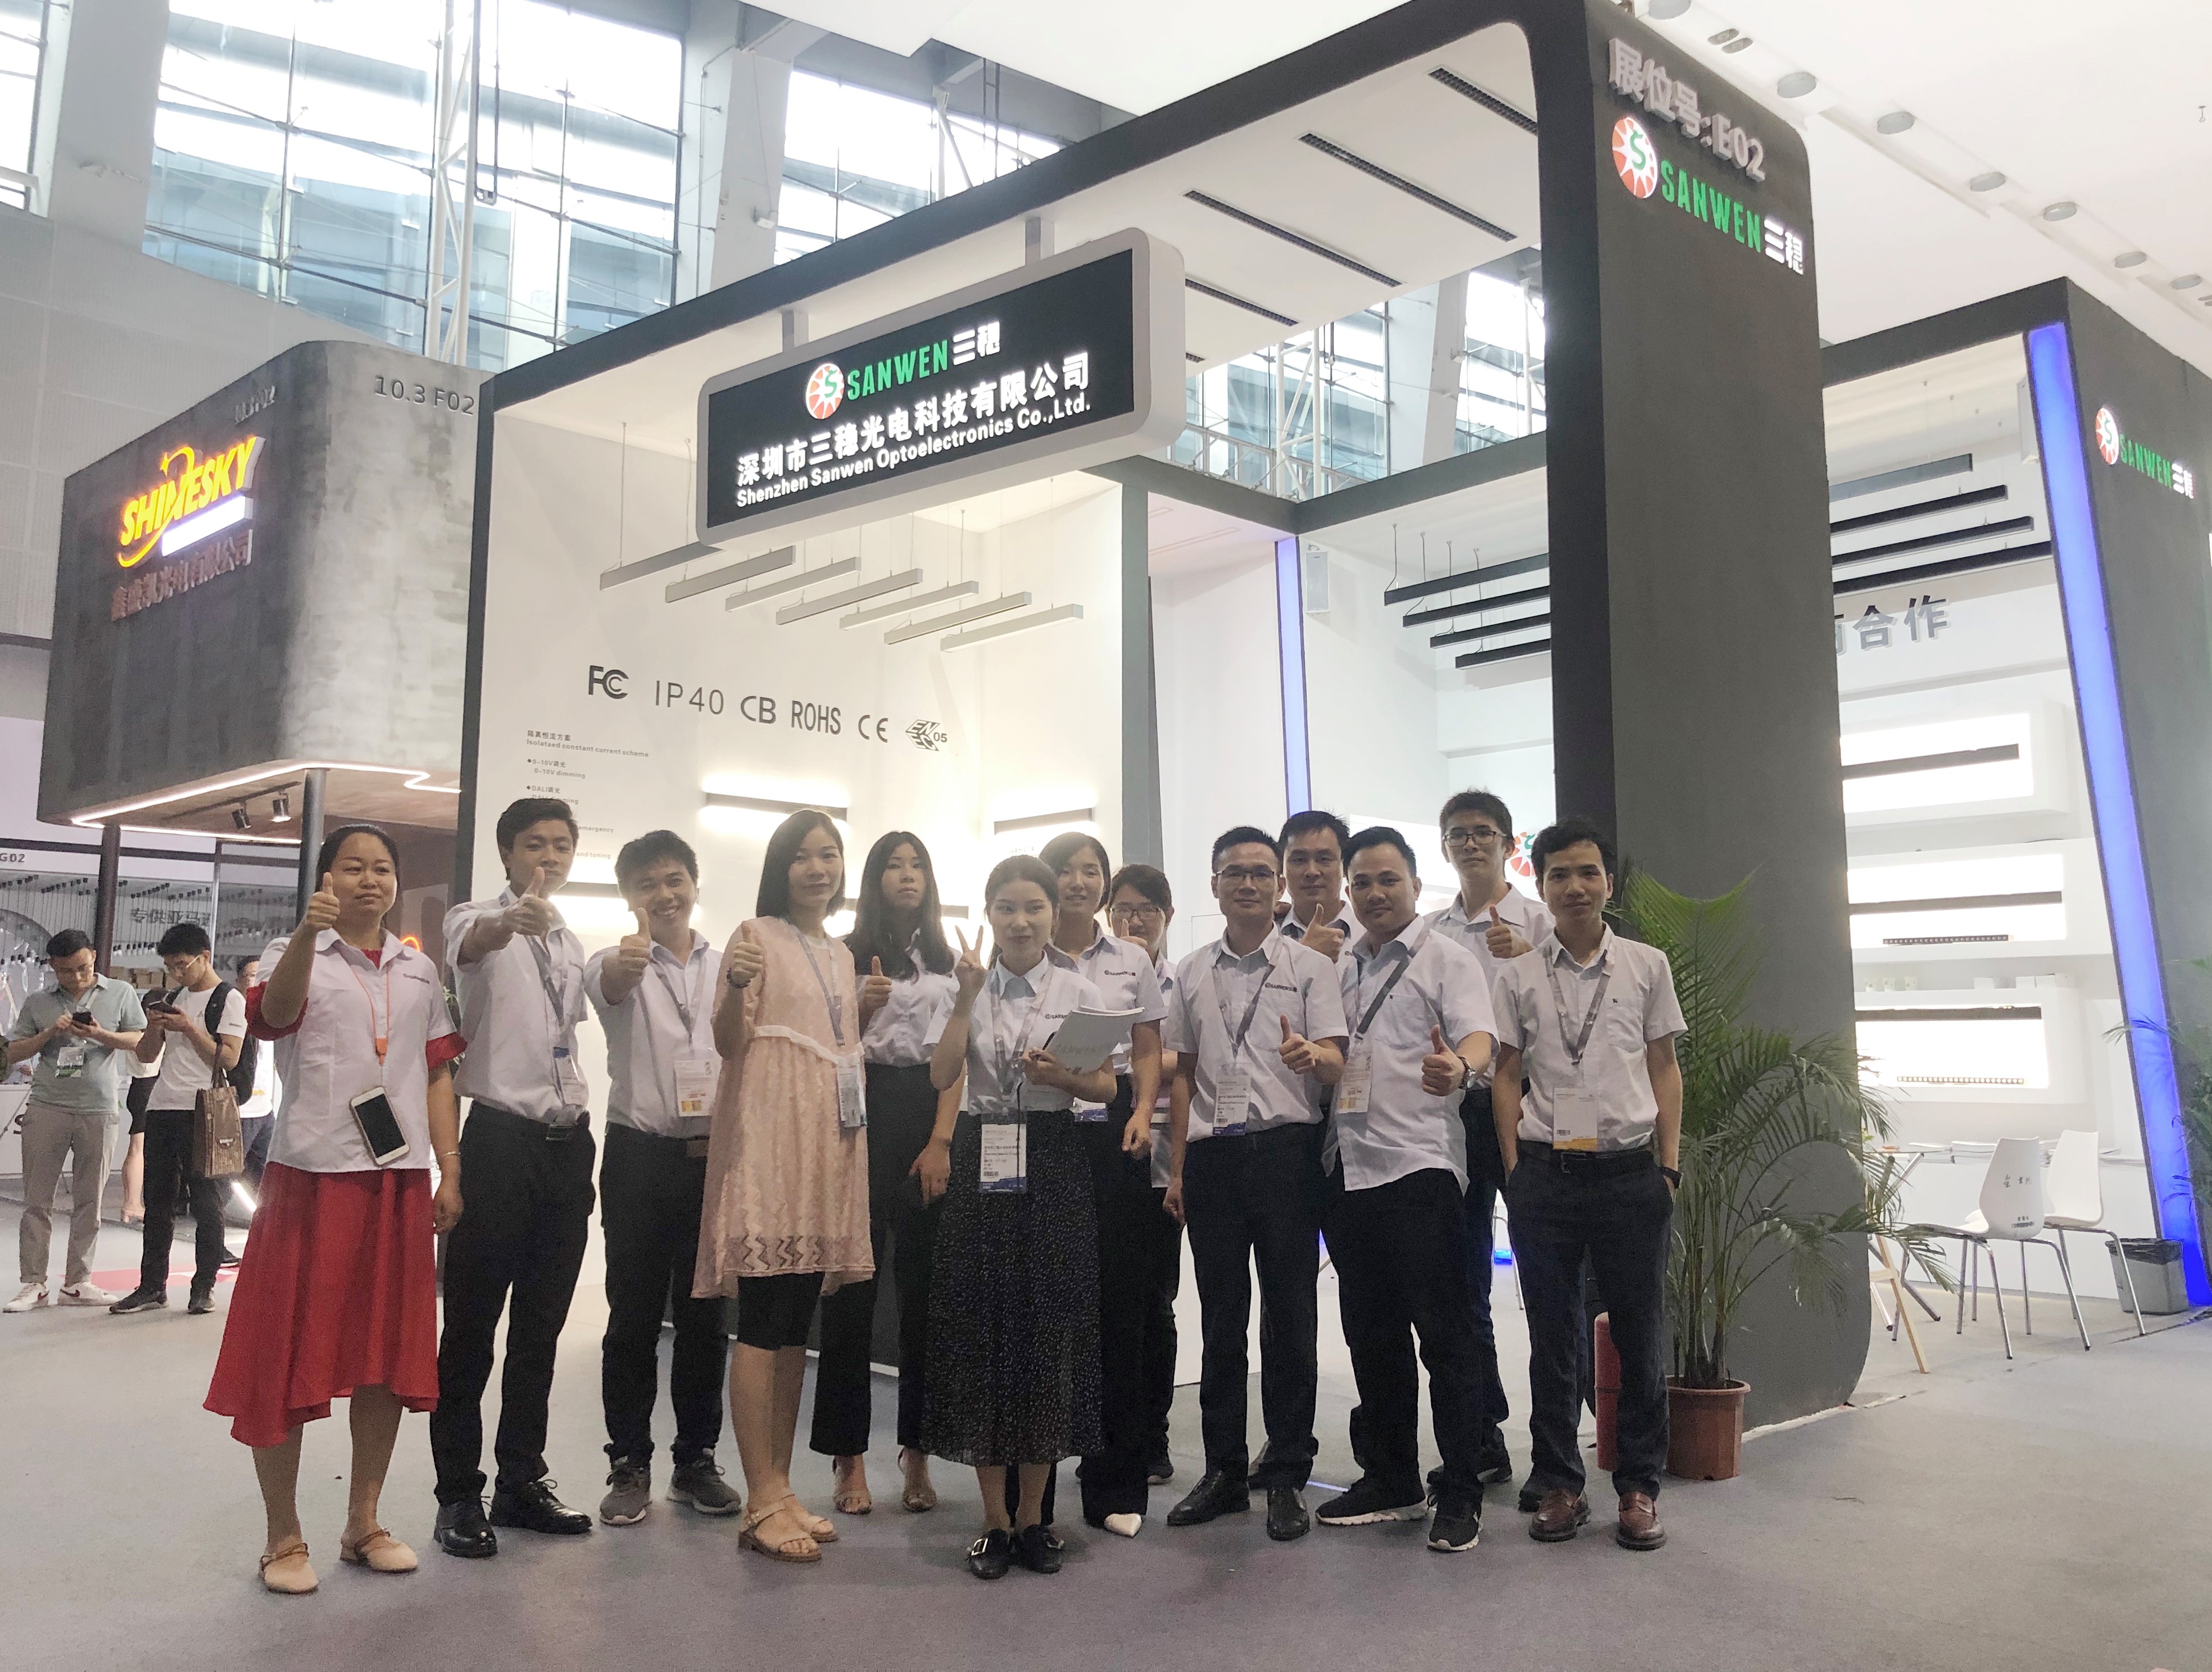 2019 Exposición Internacional de iluminación en Guangzhou